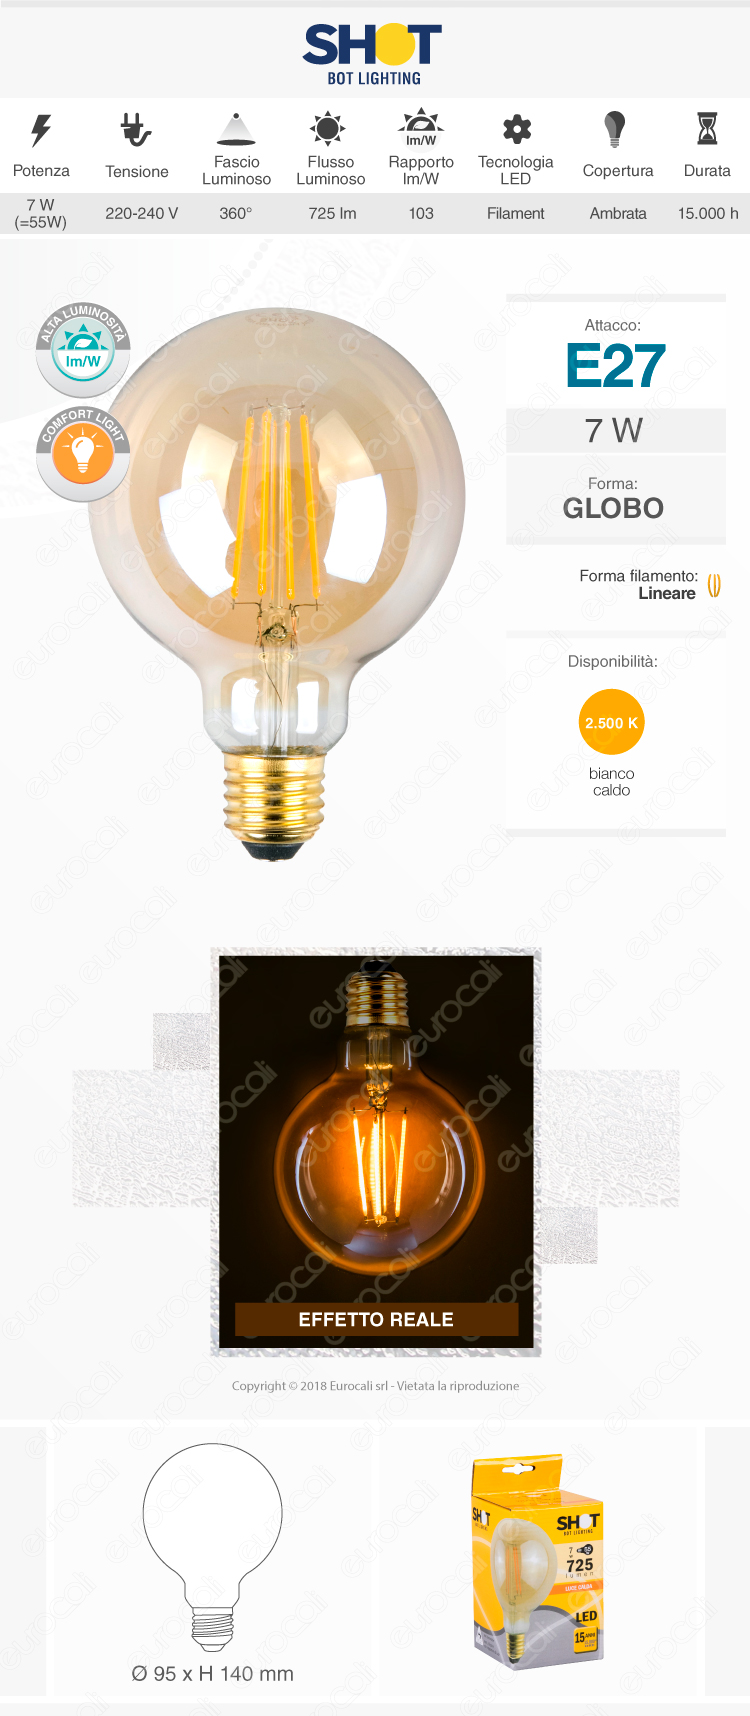 Bot Lighting Lampadina LED E27 7W Globo G95 Filamento Ambrata - mod. WLD4208X2G